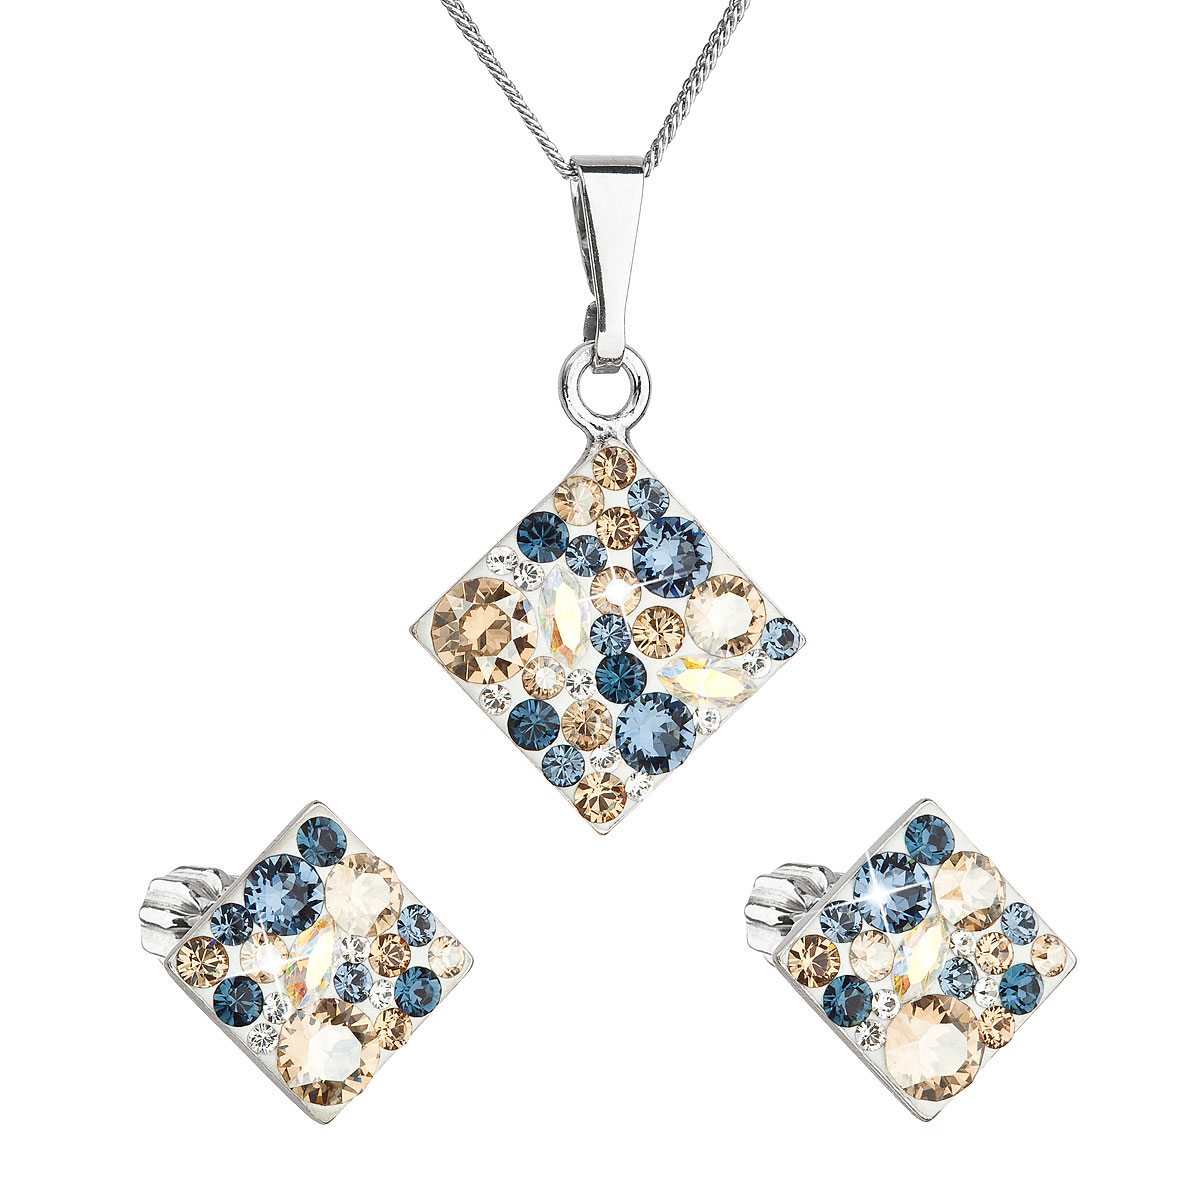 Evolution Group Sada šperků s krystaly Swarovski náušnice a přívěsek mix barev kosočtverec 39126.3 denim blue